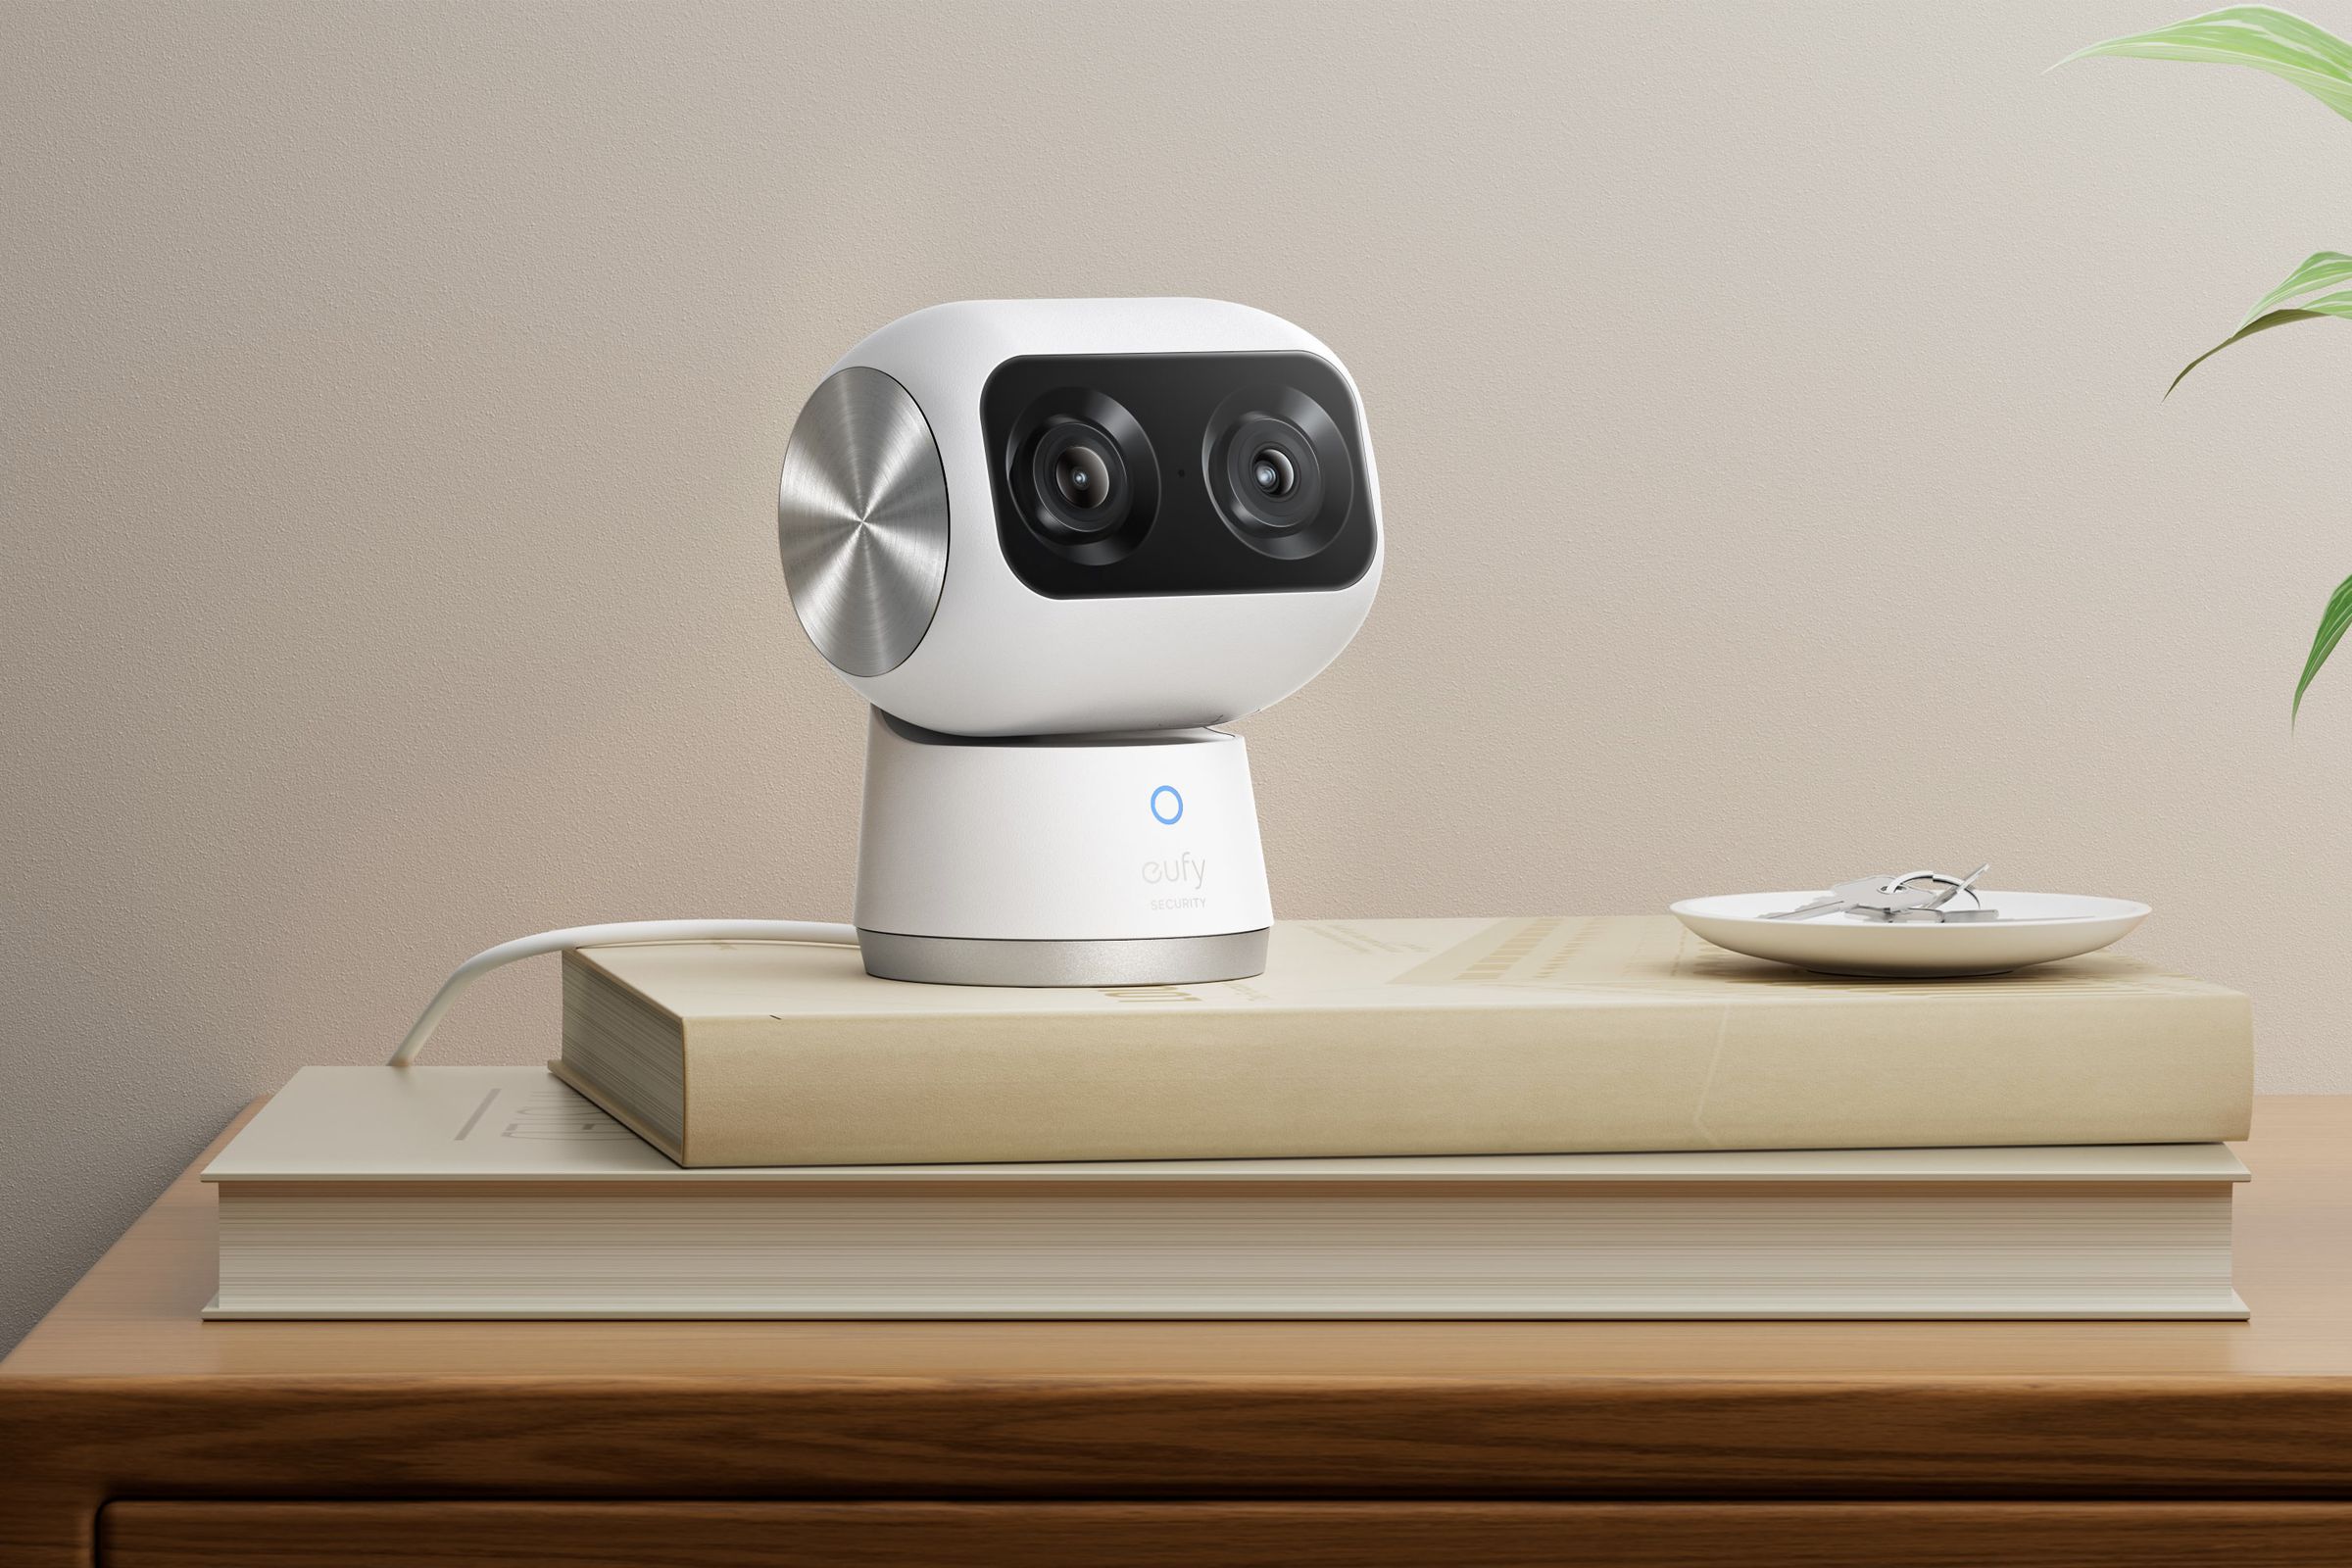 دوربین داخلی Eufy's Indoor Cam S350 شبیه یک ربات کودک است و می تواند برای تعقیب اعضای خانواده در سراسر خانه حرکت کند و کج کند.